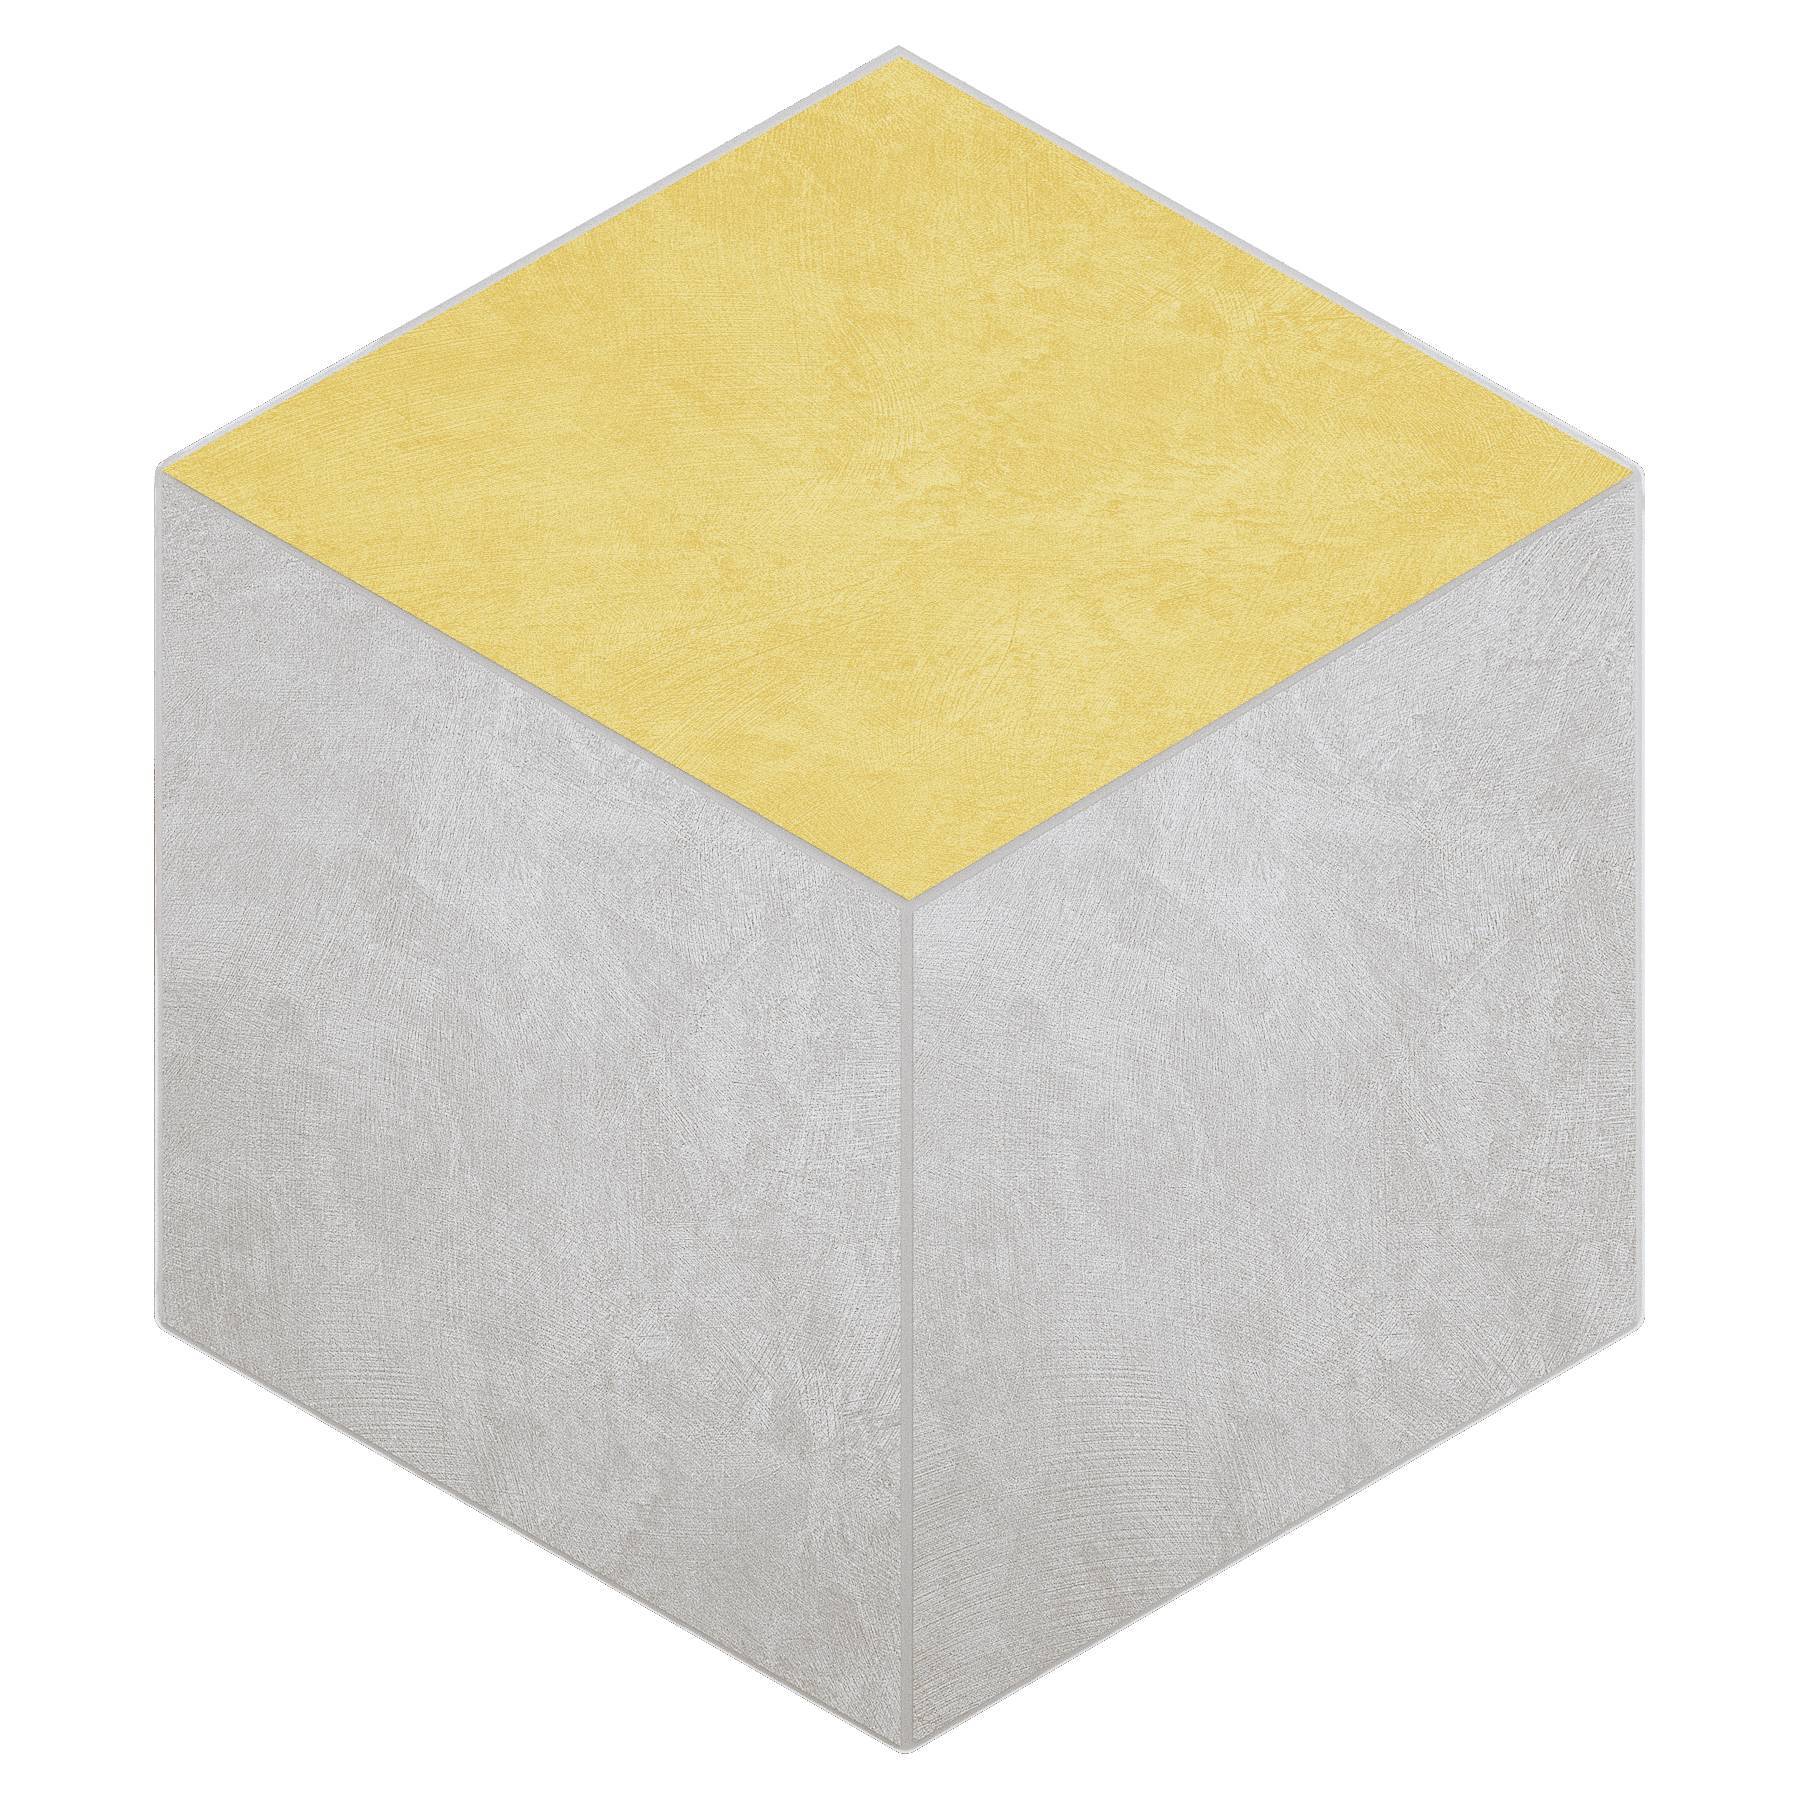 Мозаика Ametis Spectrum Milky White/Yellow SR00/SR04 Cube Непол. 29x25 мозаика ametis marmulla ivory ma00 cube полир 29x25